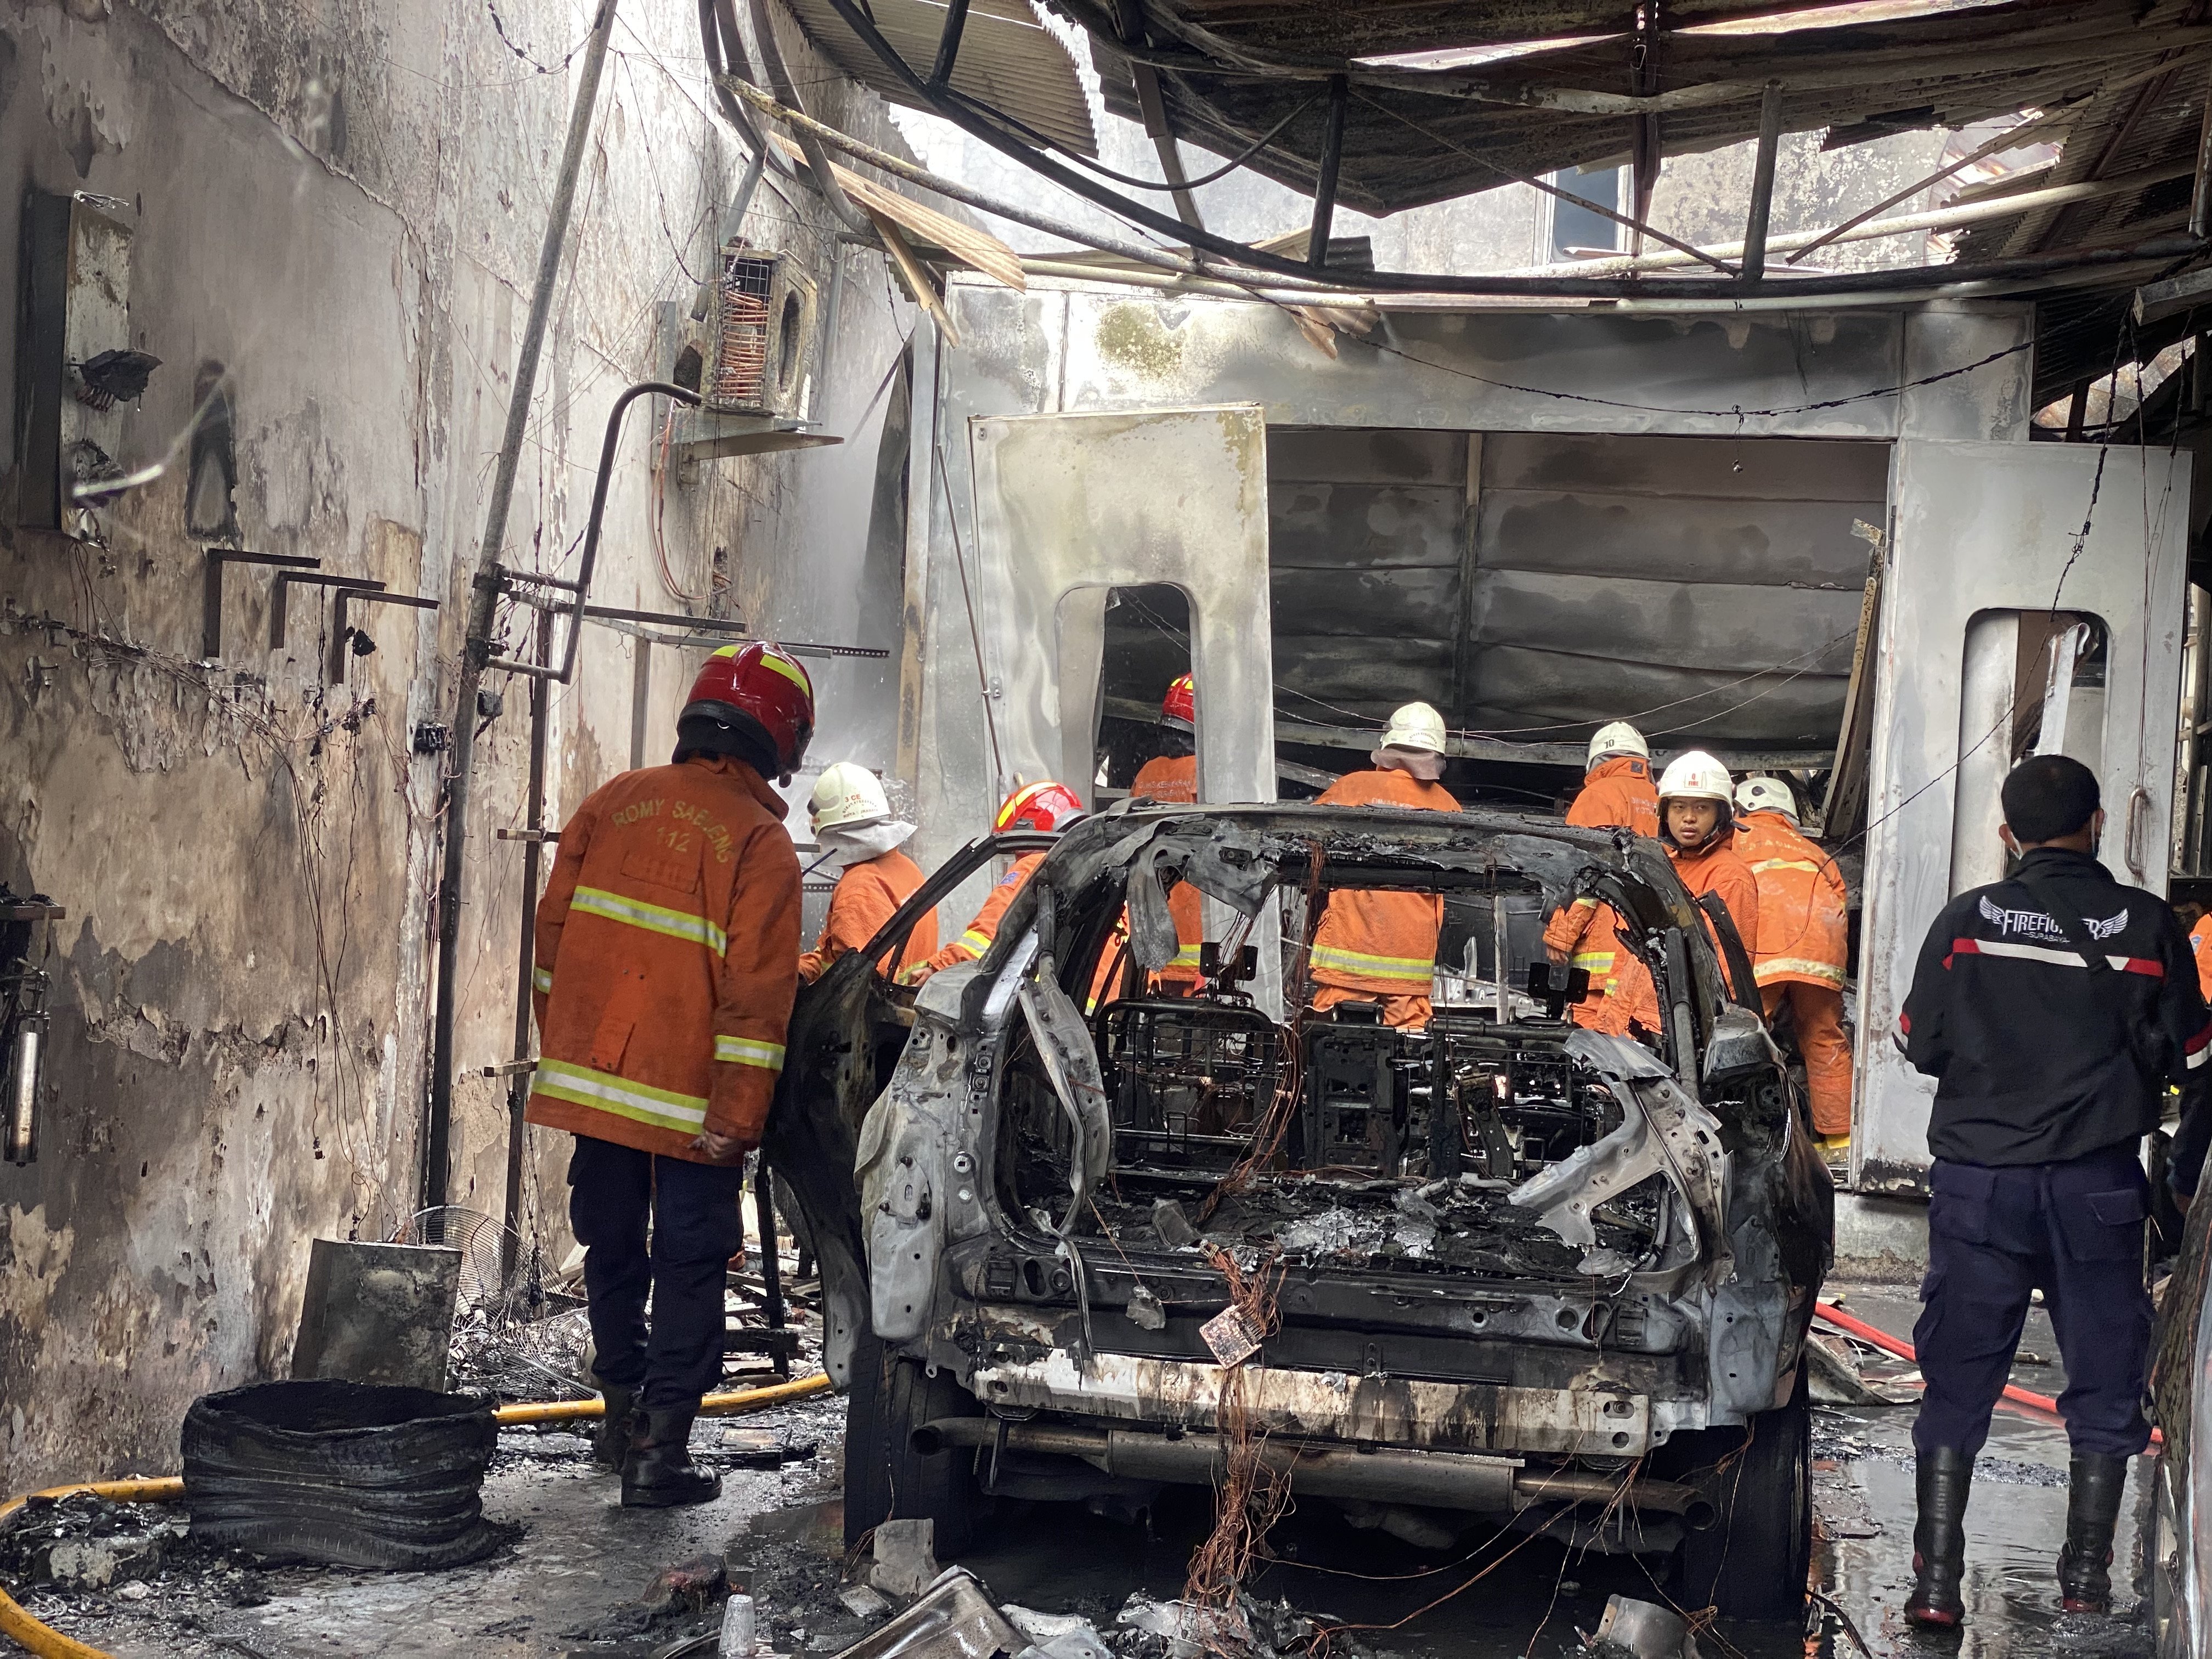 Kebakaran Bengkel di Jalan Barata, 3 Mobil Mewah Hangus Terbakar - JPNN.com Jatim